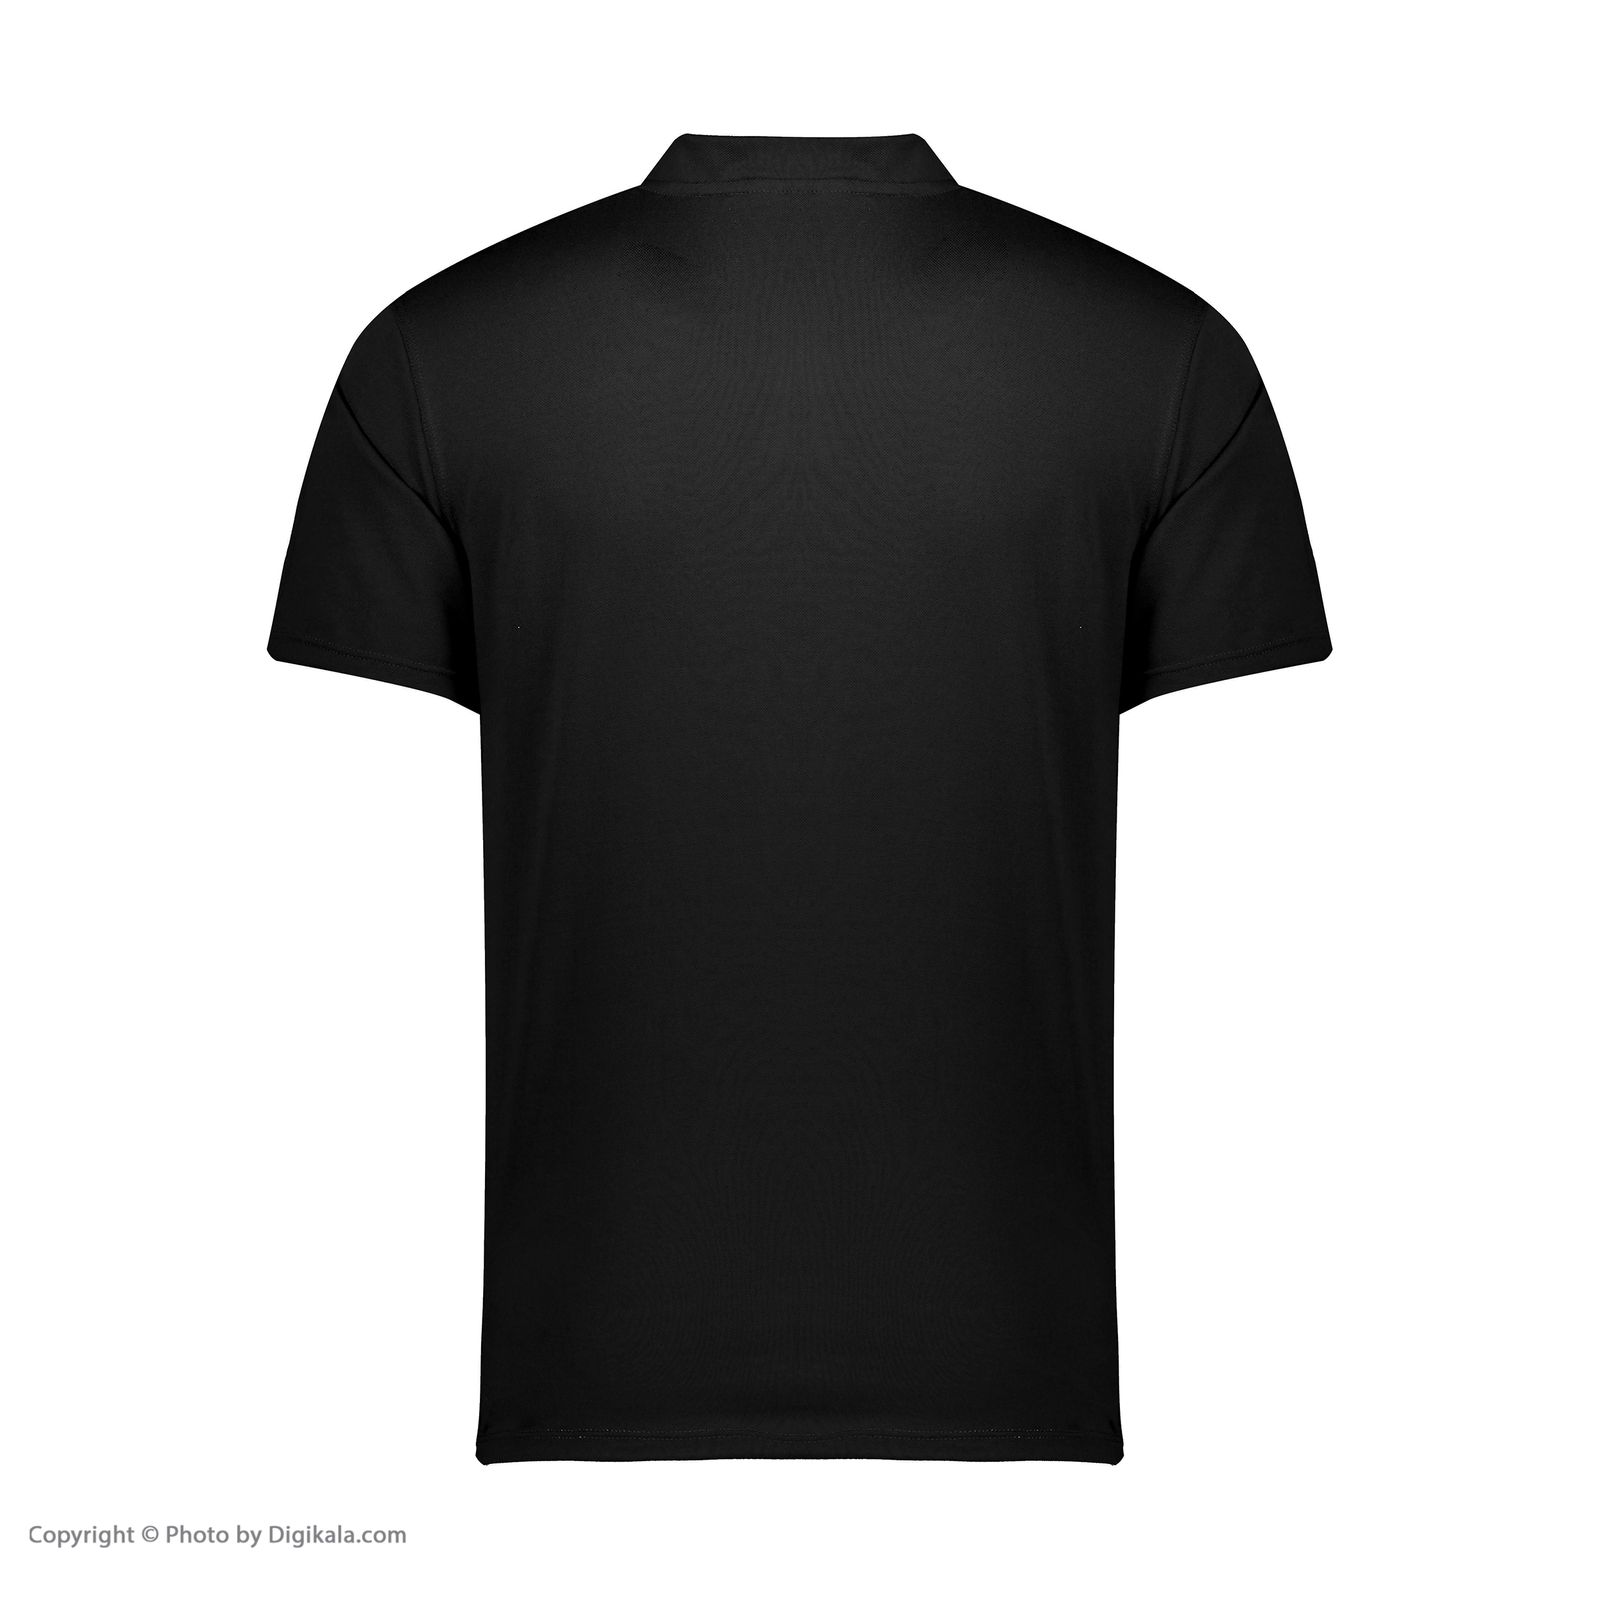 تی شرت ورزشی مردانه بی فور ران مدل 980317-9974 - مشکی - قرمز - 4